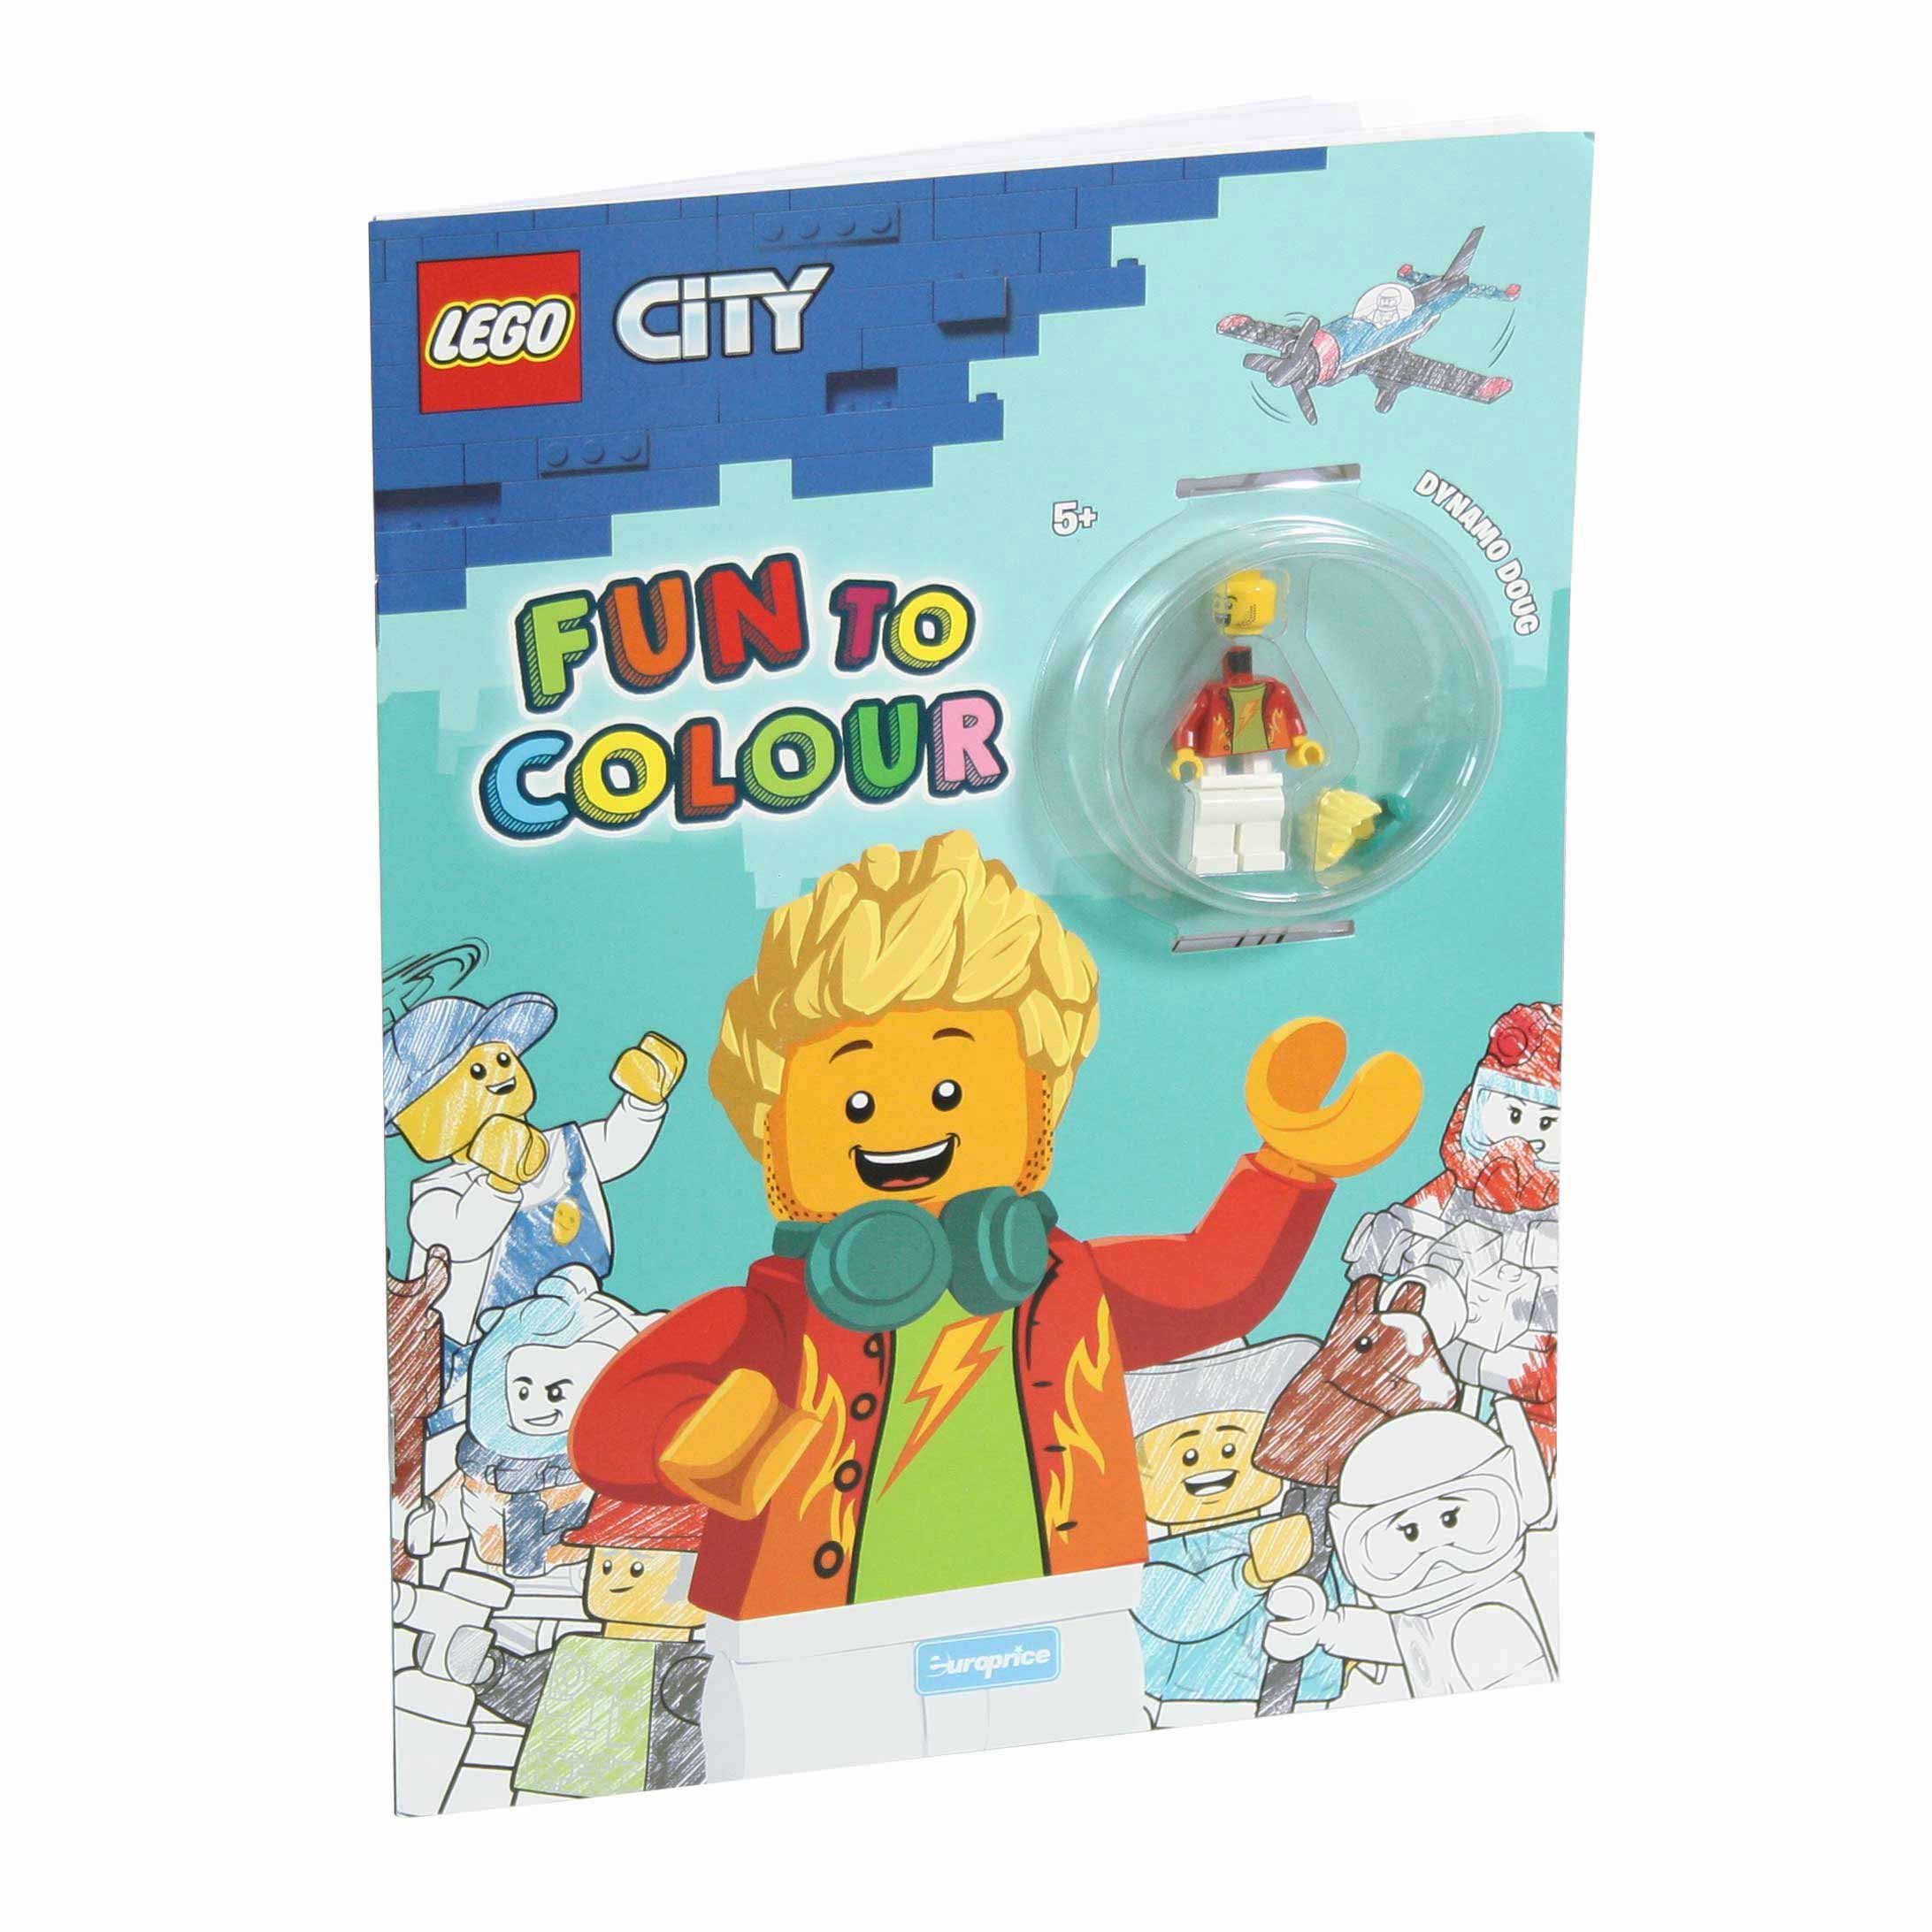 Imagem da capa do livro de pintar "Lego Fun to Colour – City Dynamo Doug" com a minifigura LEGO.